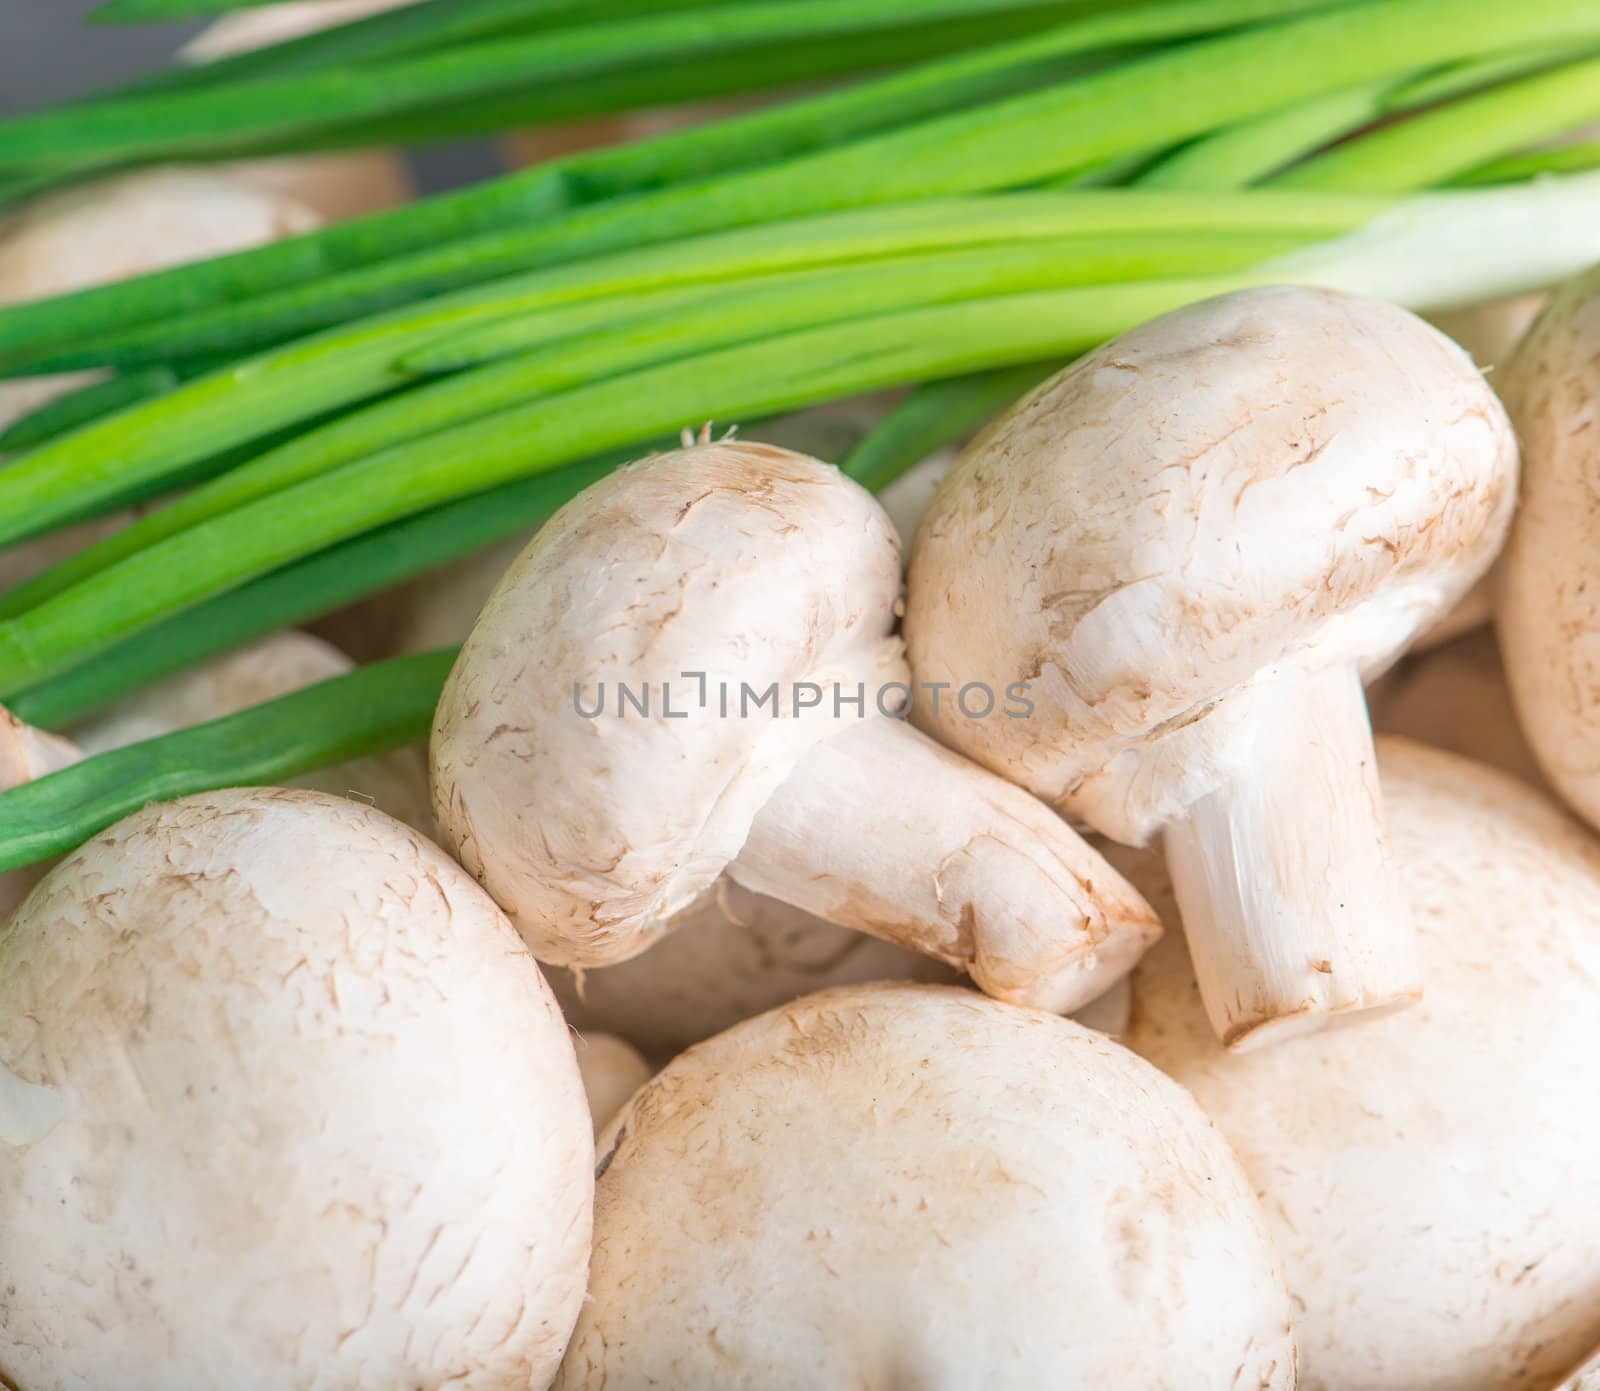 mushrooms and green onions by GekaSkr